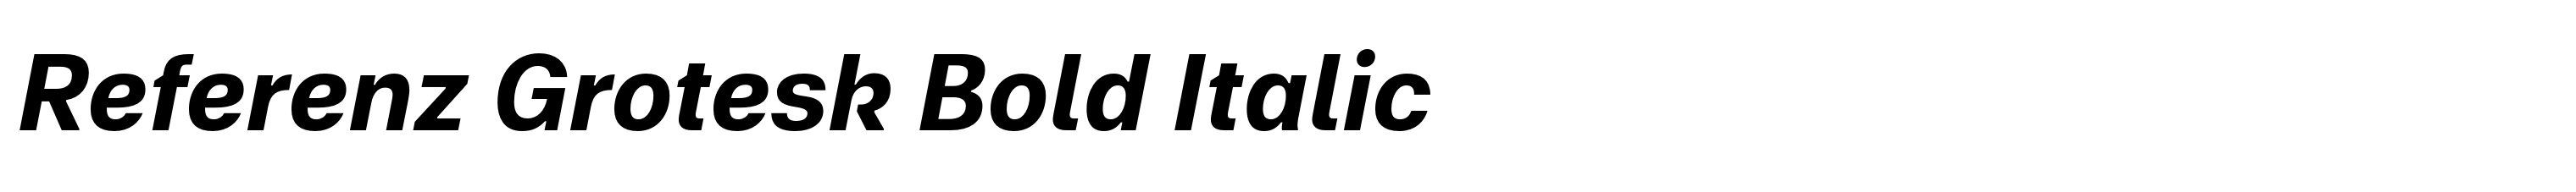 Referenz Grotesk Bold Italic